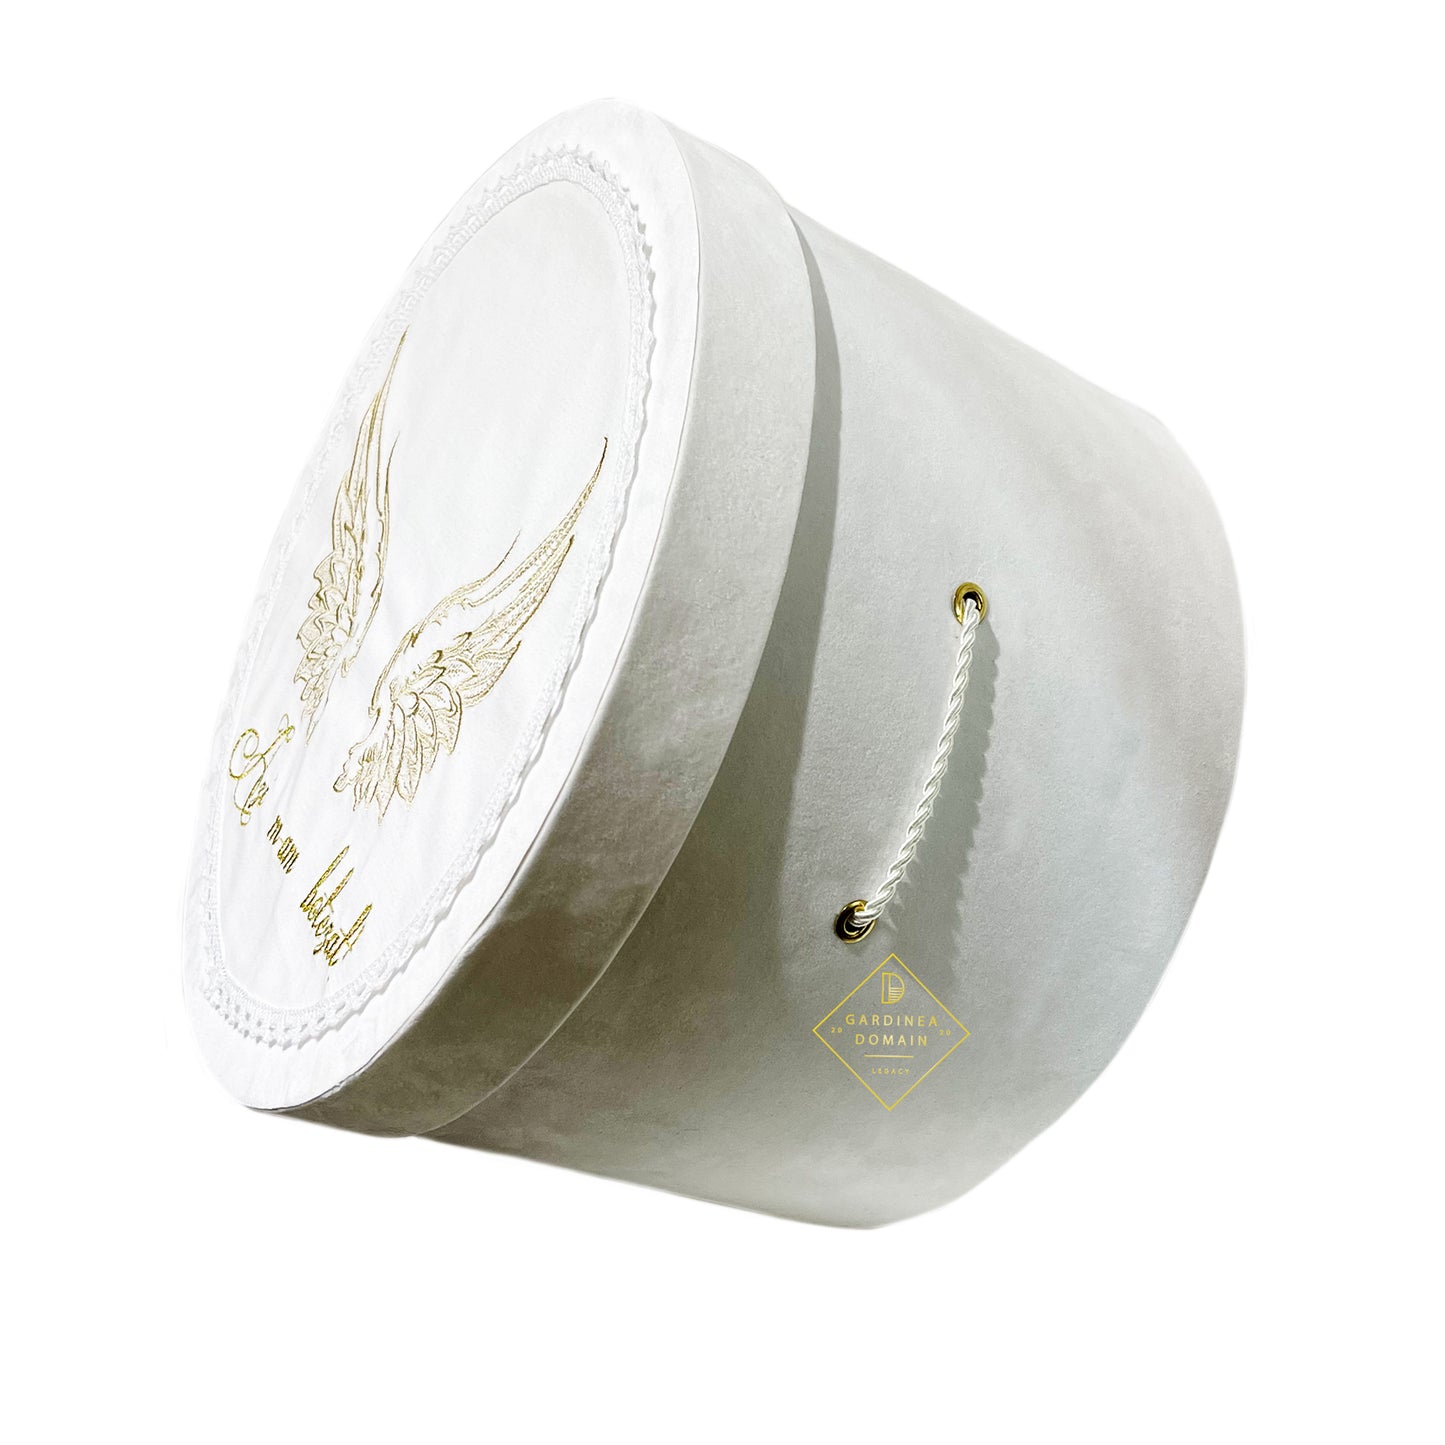 Trusou elegant botez Gardinea Domain® 10 piese, cutie trusou din catifea alb ivoire si capac personalizat brodat cu mesajul "Azi m-am botezat!", decor dantela